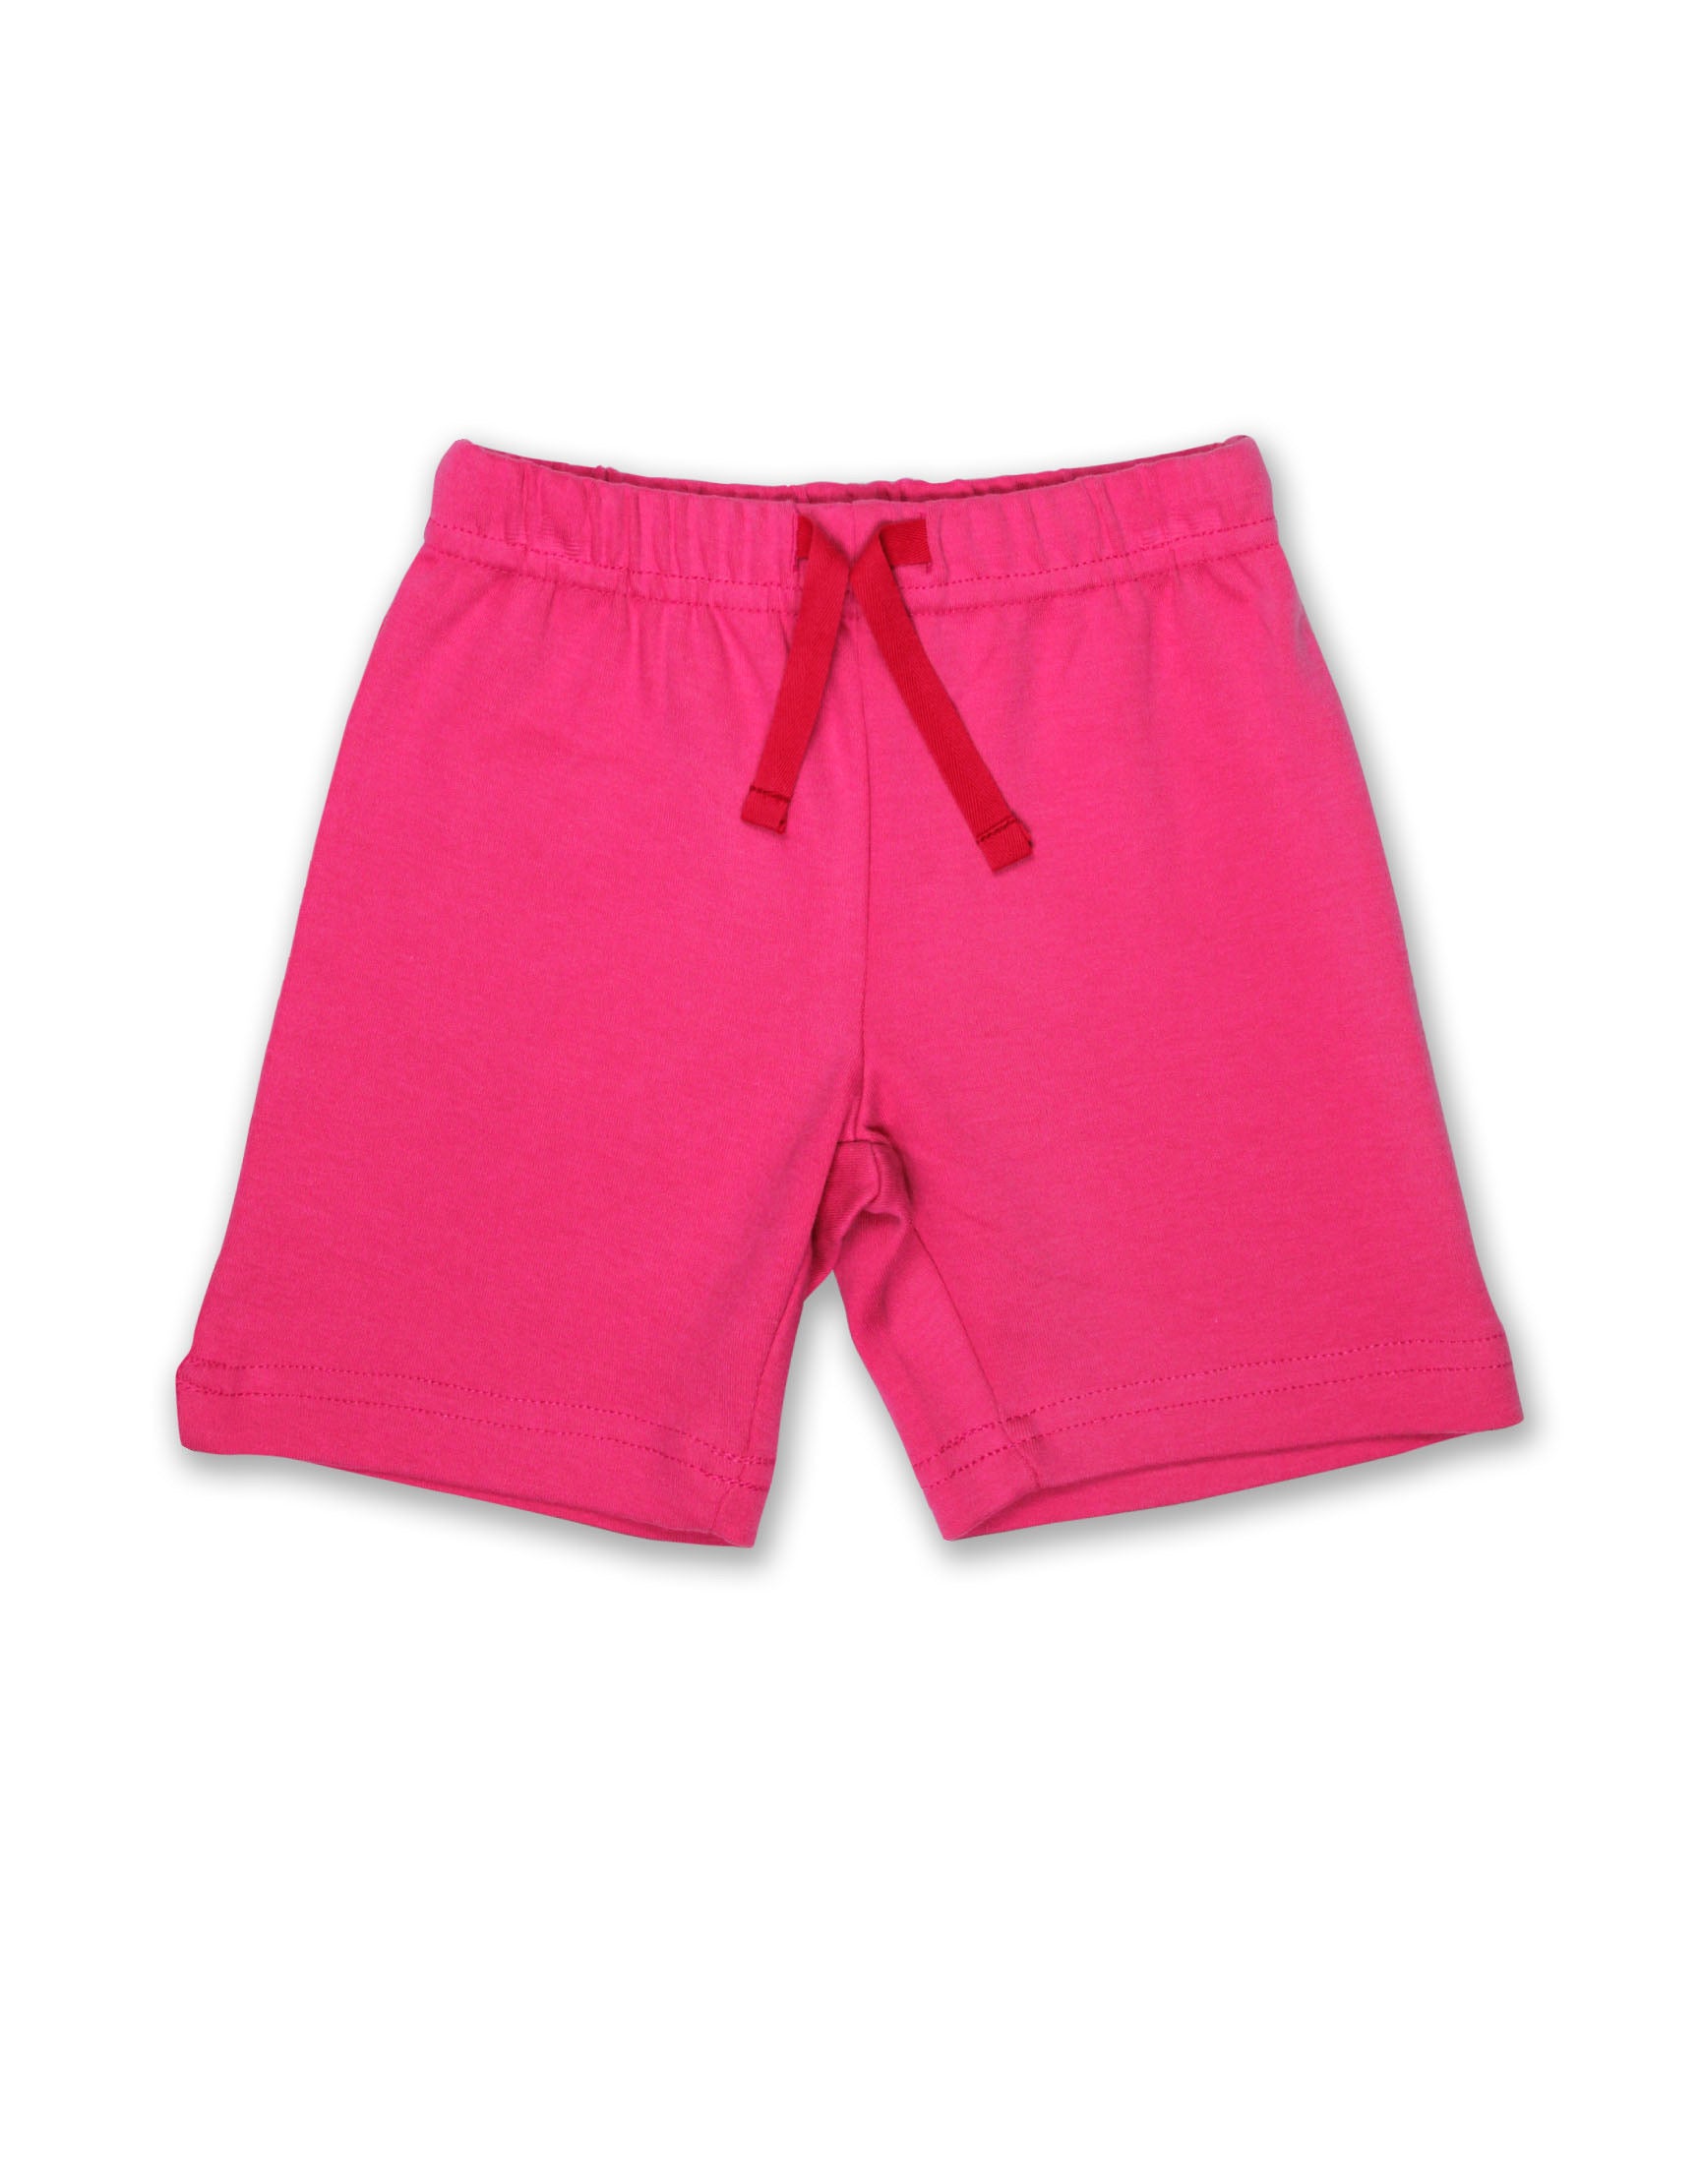 Toby Tiger Shorts Pink